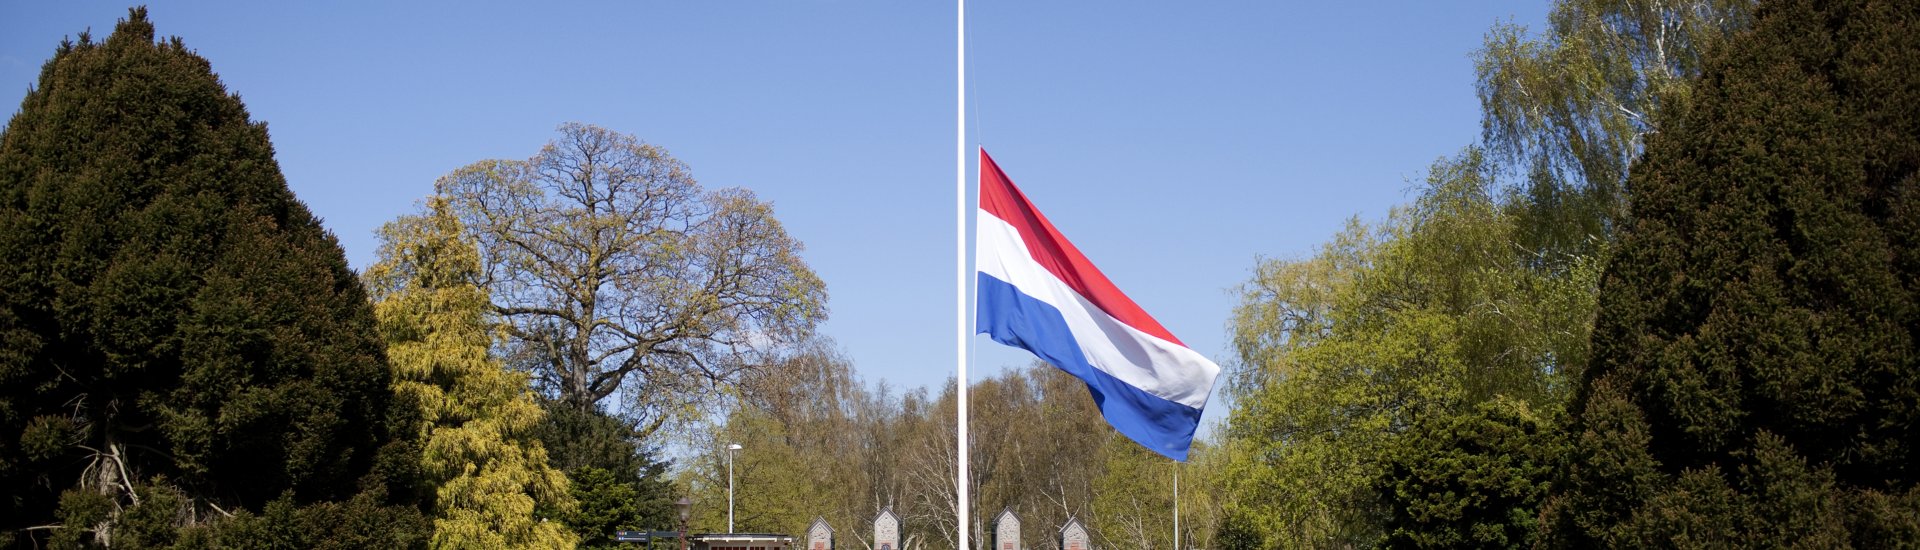 Op 4 mei hangt de vlag halfstok op begraafplaats De Nieuwe Ooster in Amsterdam vanwege de Nationale Dodenherdenking. (Foto: Dirk-Jan Visser | CC/Flickr.com/4 en 5 mei Amsterdam)